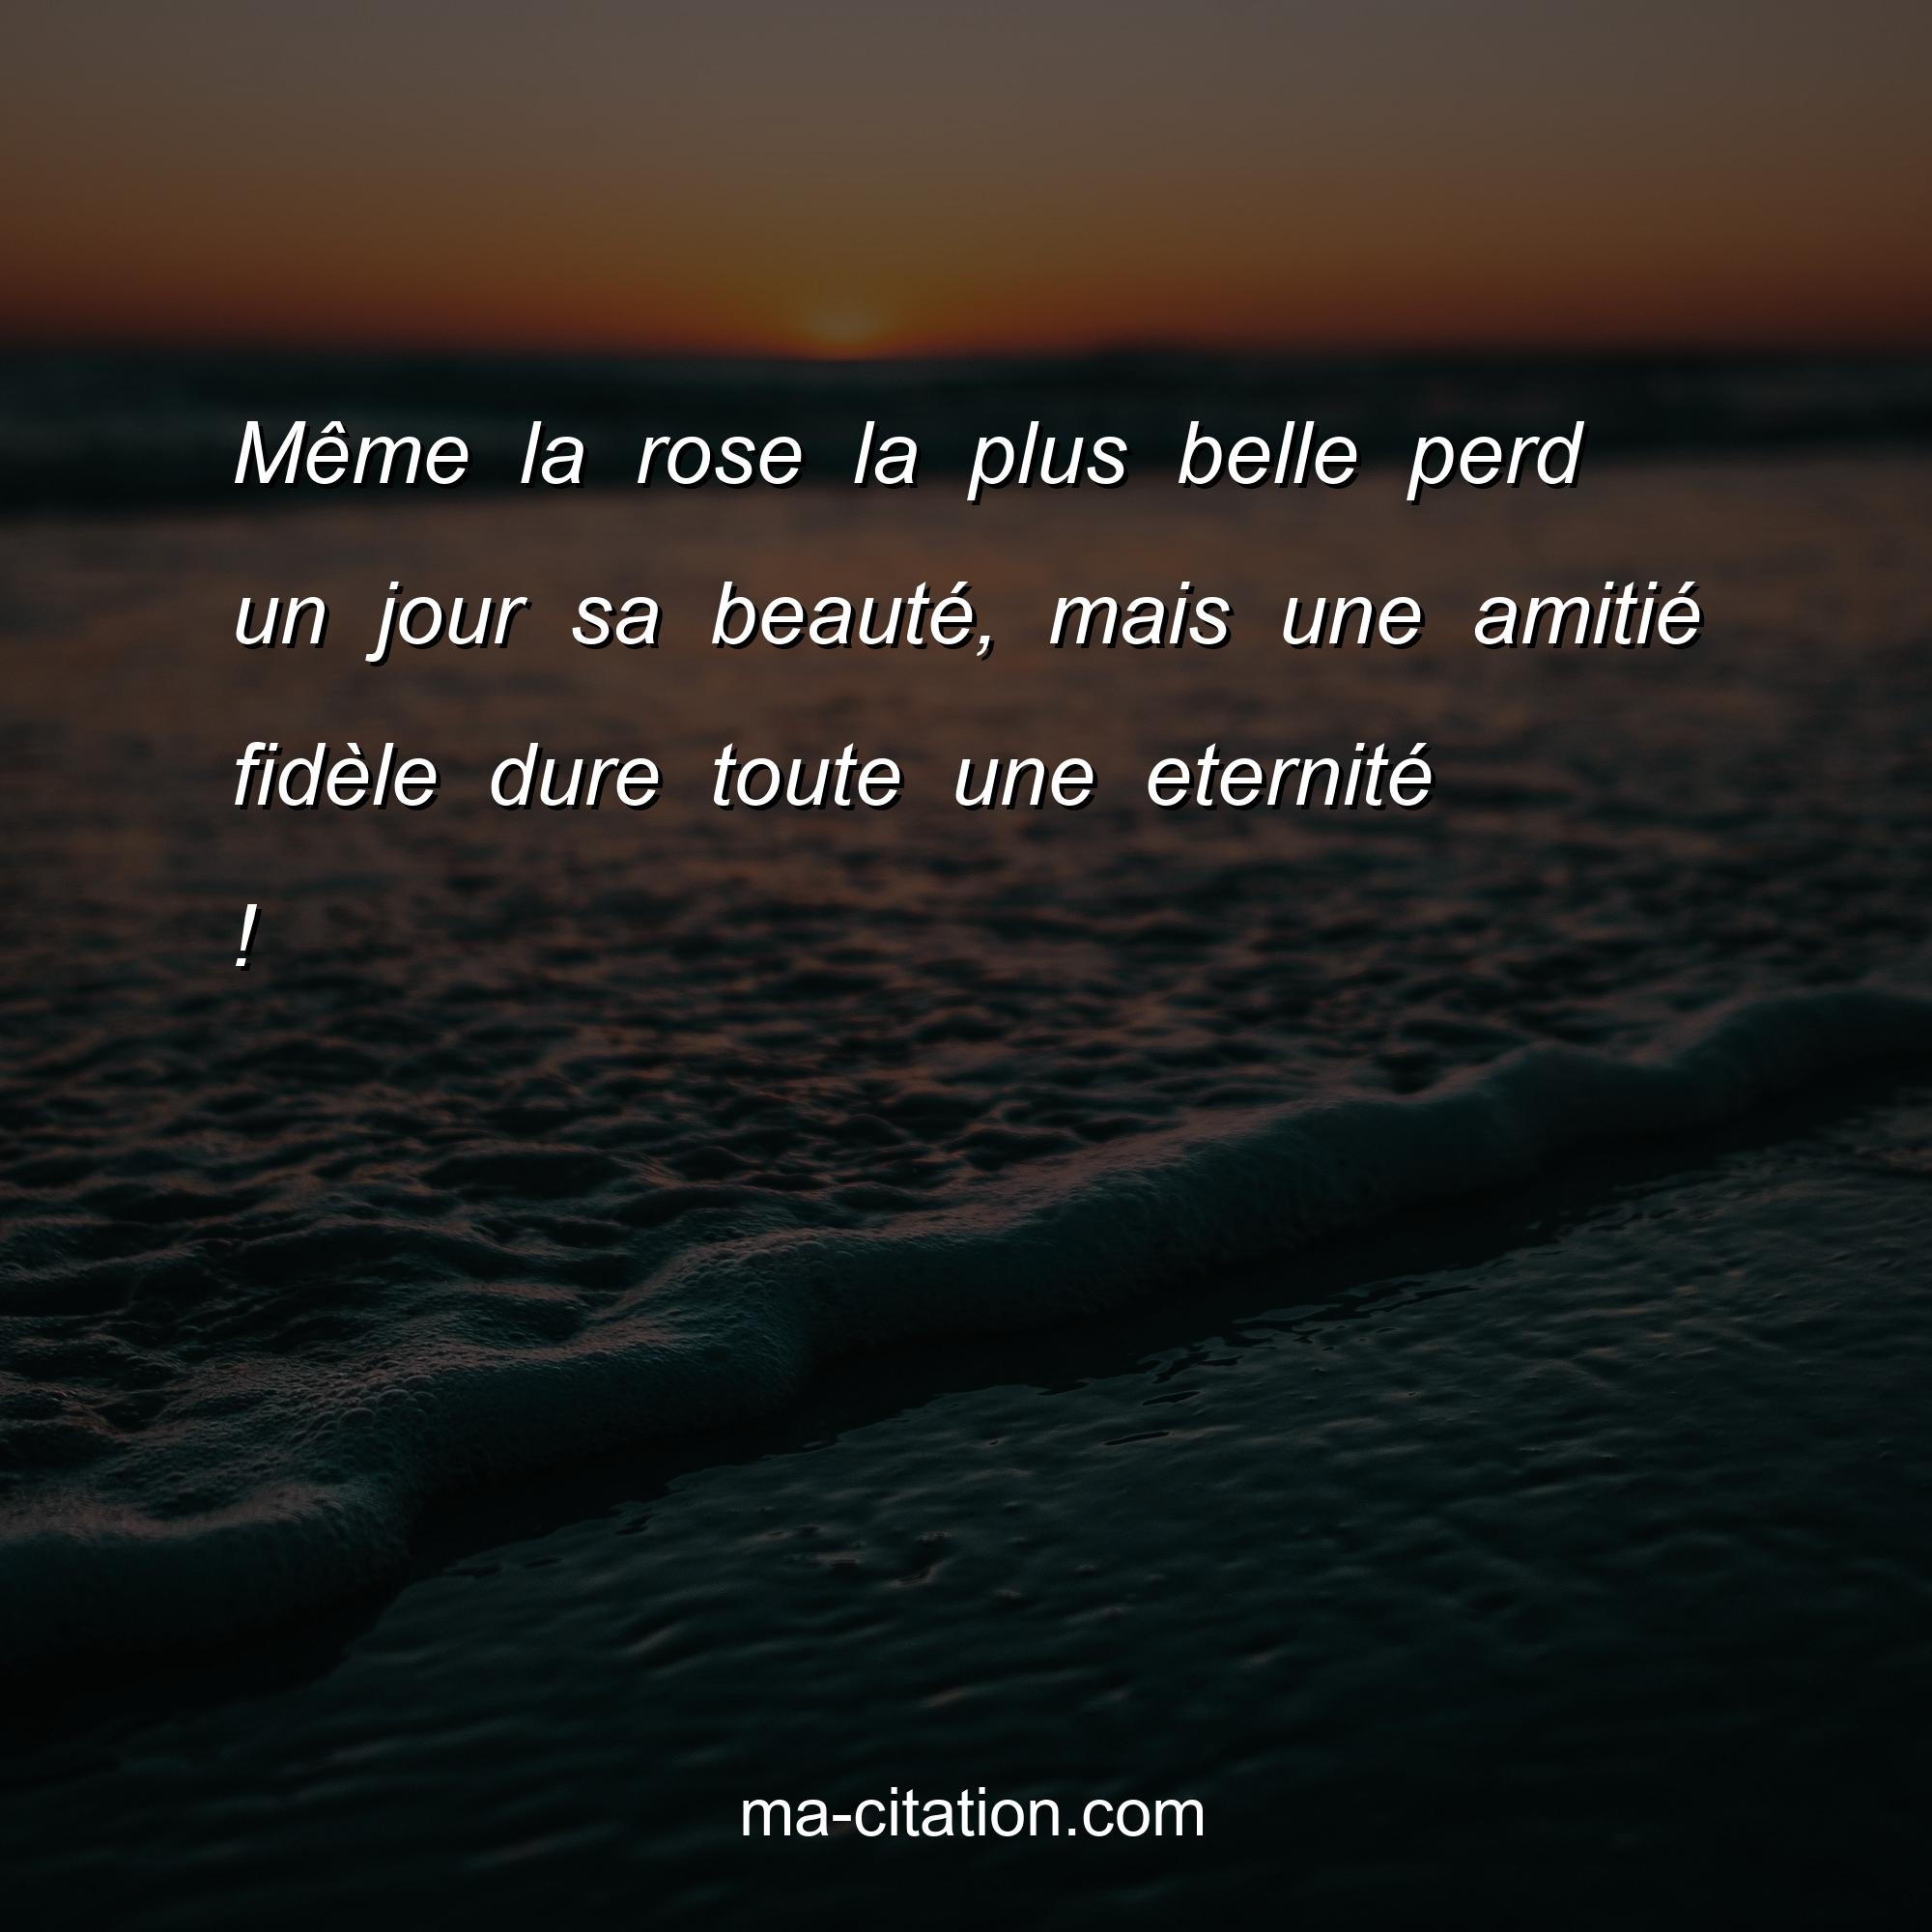 Ma-Citation.com : Même la rose la plus belle perd un jour sa beauté mais une amité fidèle dure toute la vie.